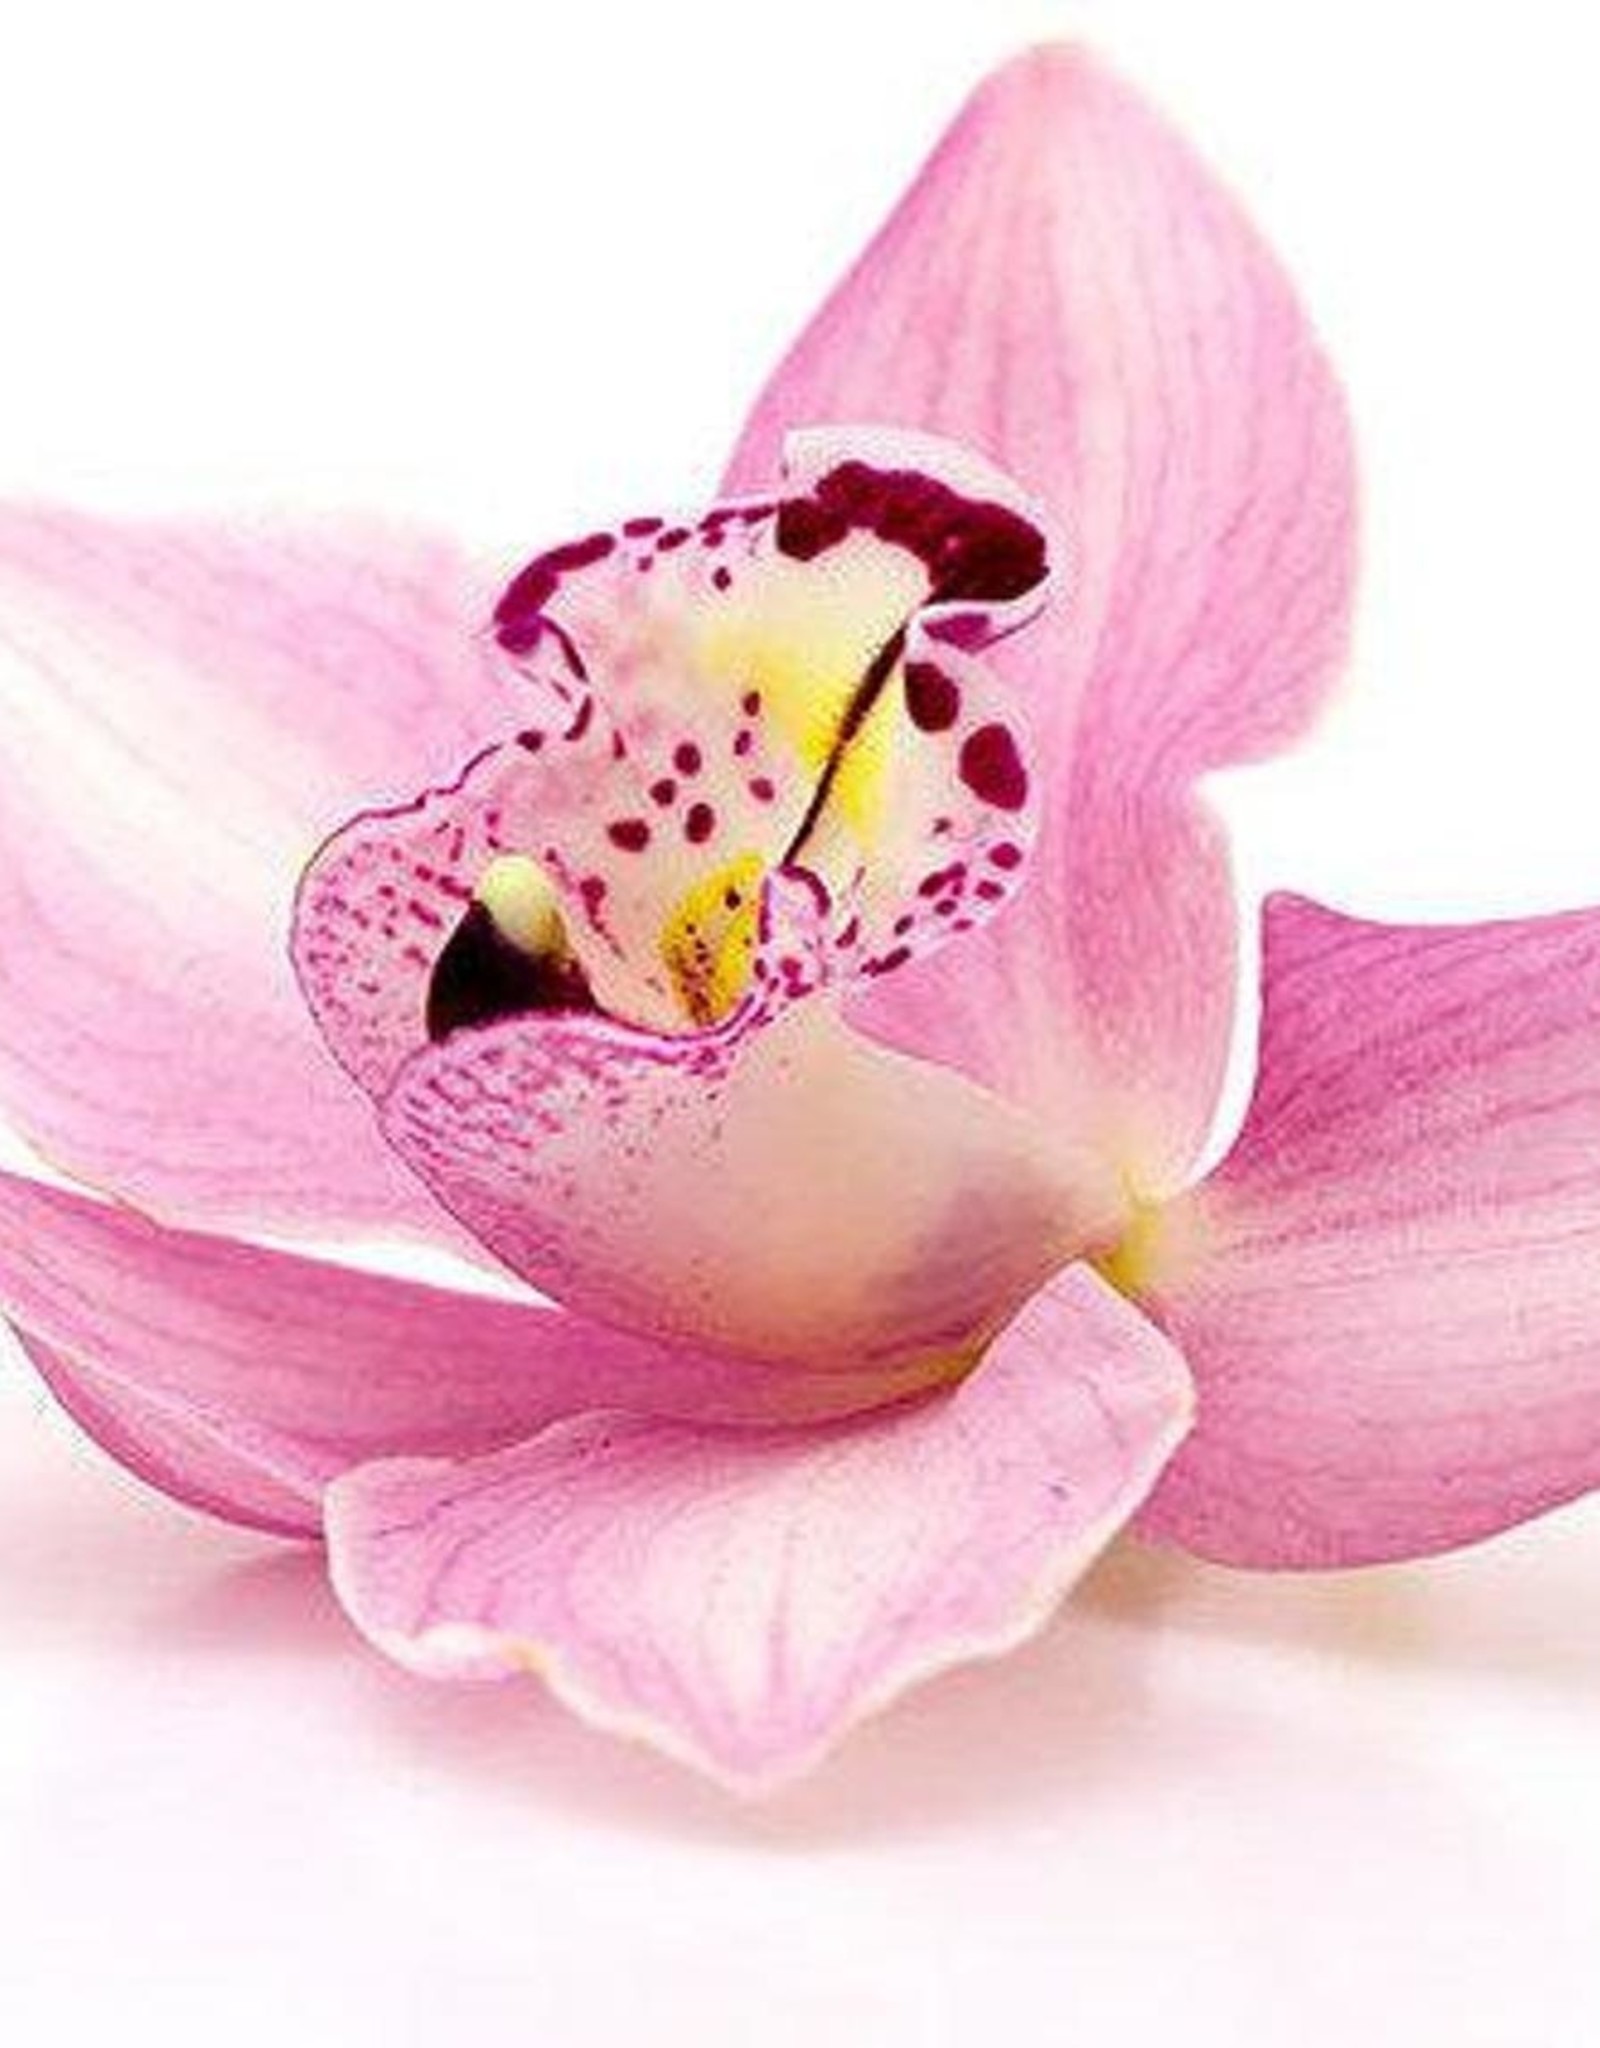 Waxmelt Winter Orchid 15 gram